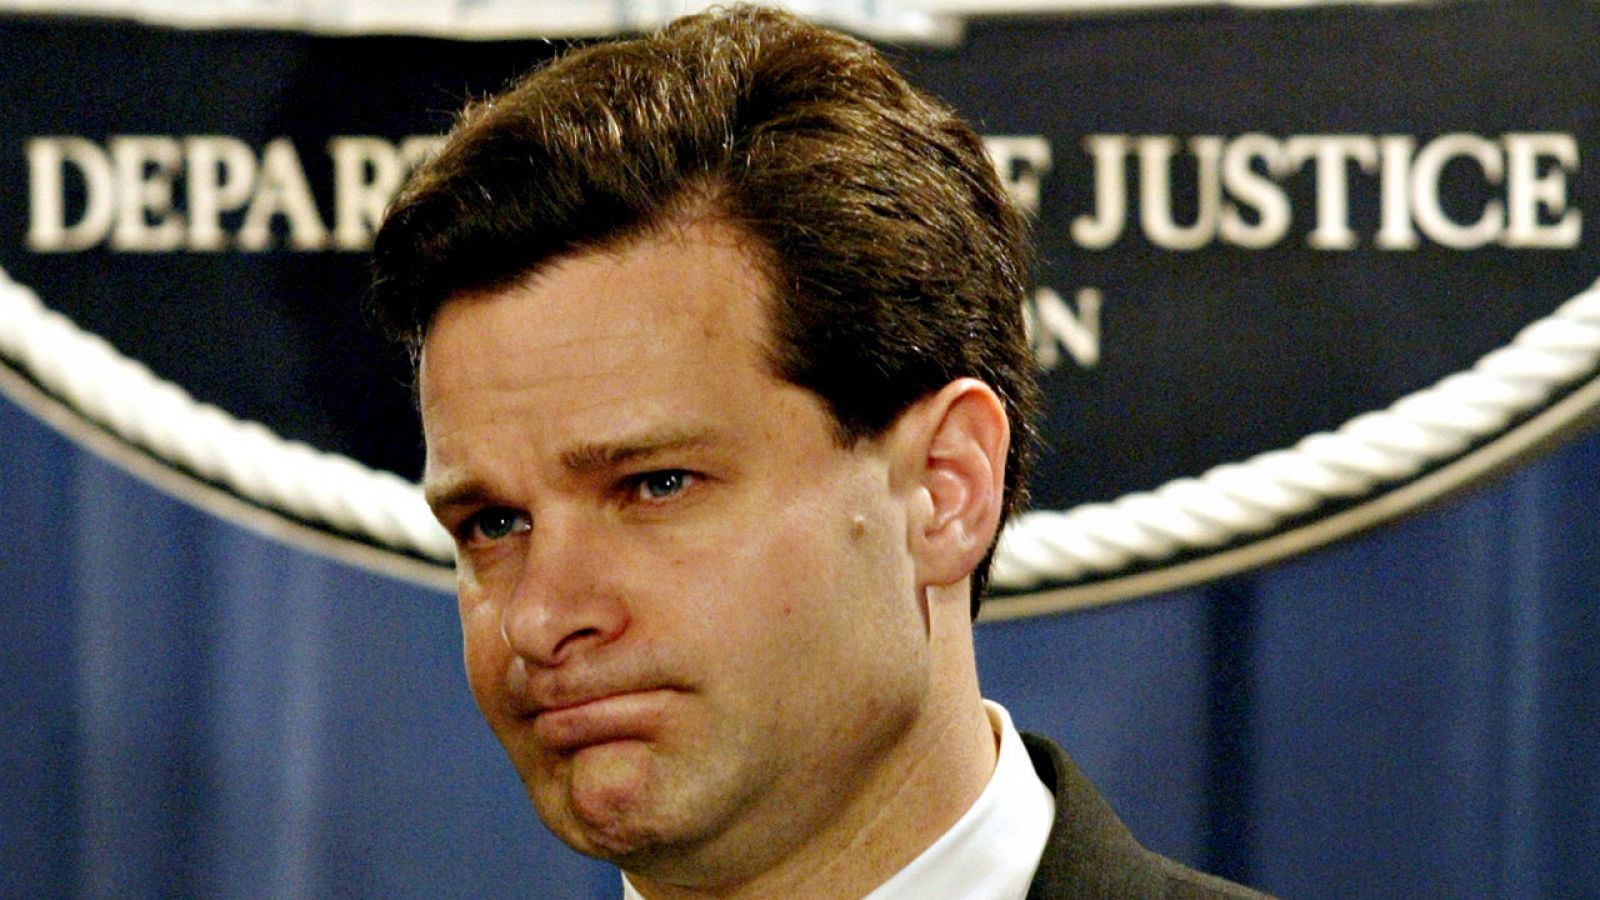 El abogado Christopher A. Wray, en una imagen de 2004, cuando trabajaba para el Departamento de Justicia